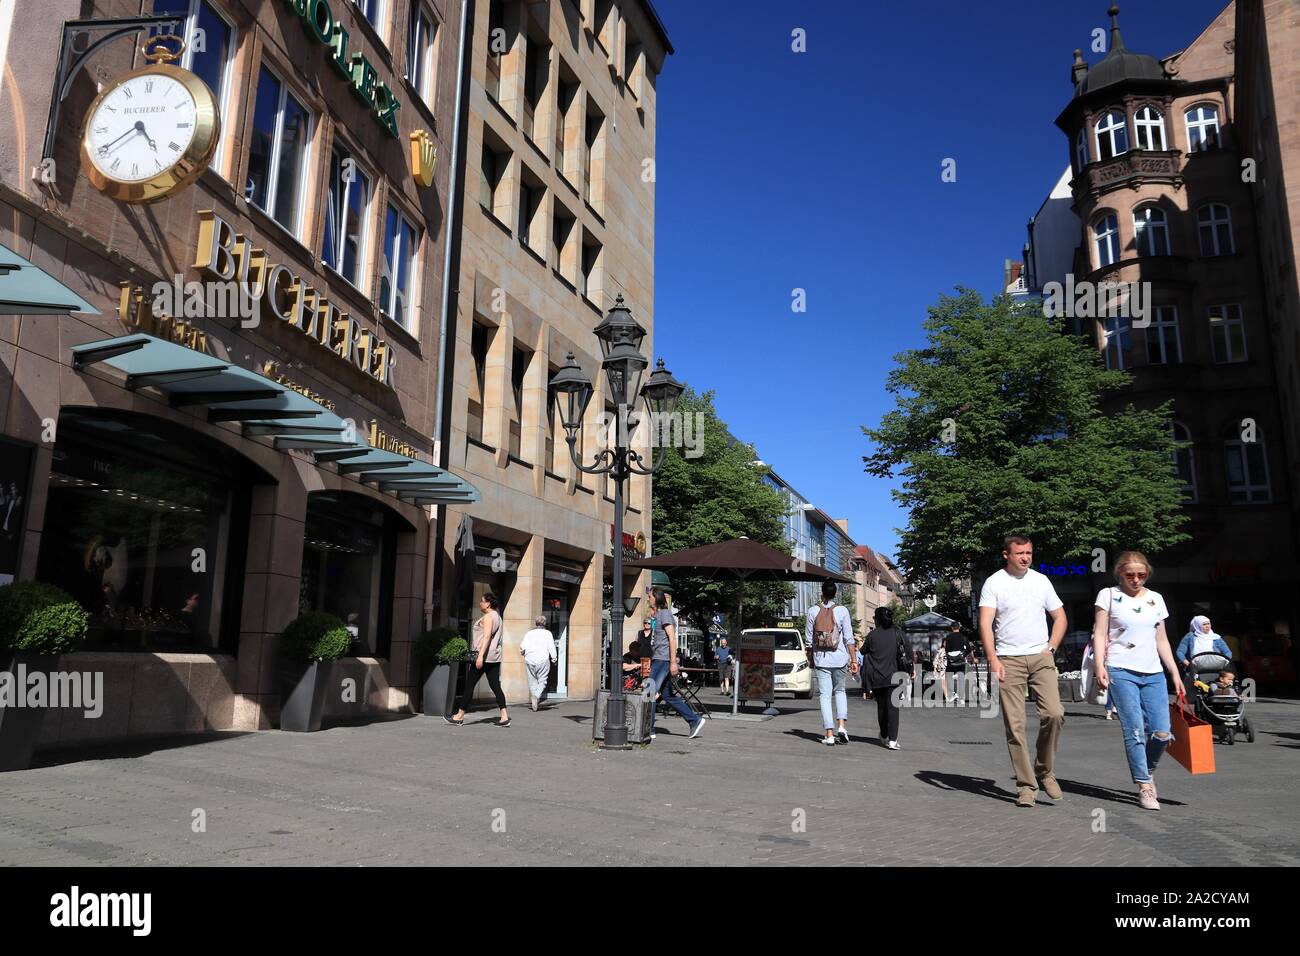 NUREMBERG, GERMANY - MAY 7, 2018: People visit Hefnersplatz (Hefner Square) shopping area in Nuremberg Old Town, Germany. Stock Photo